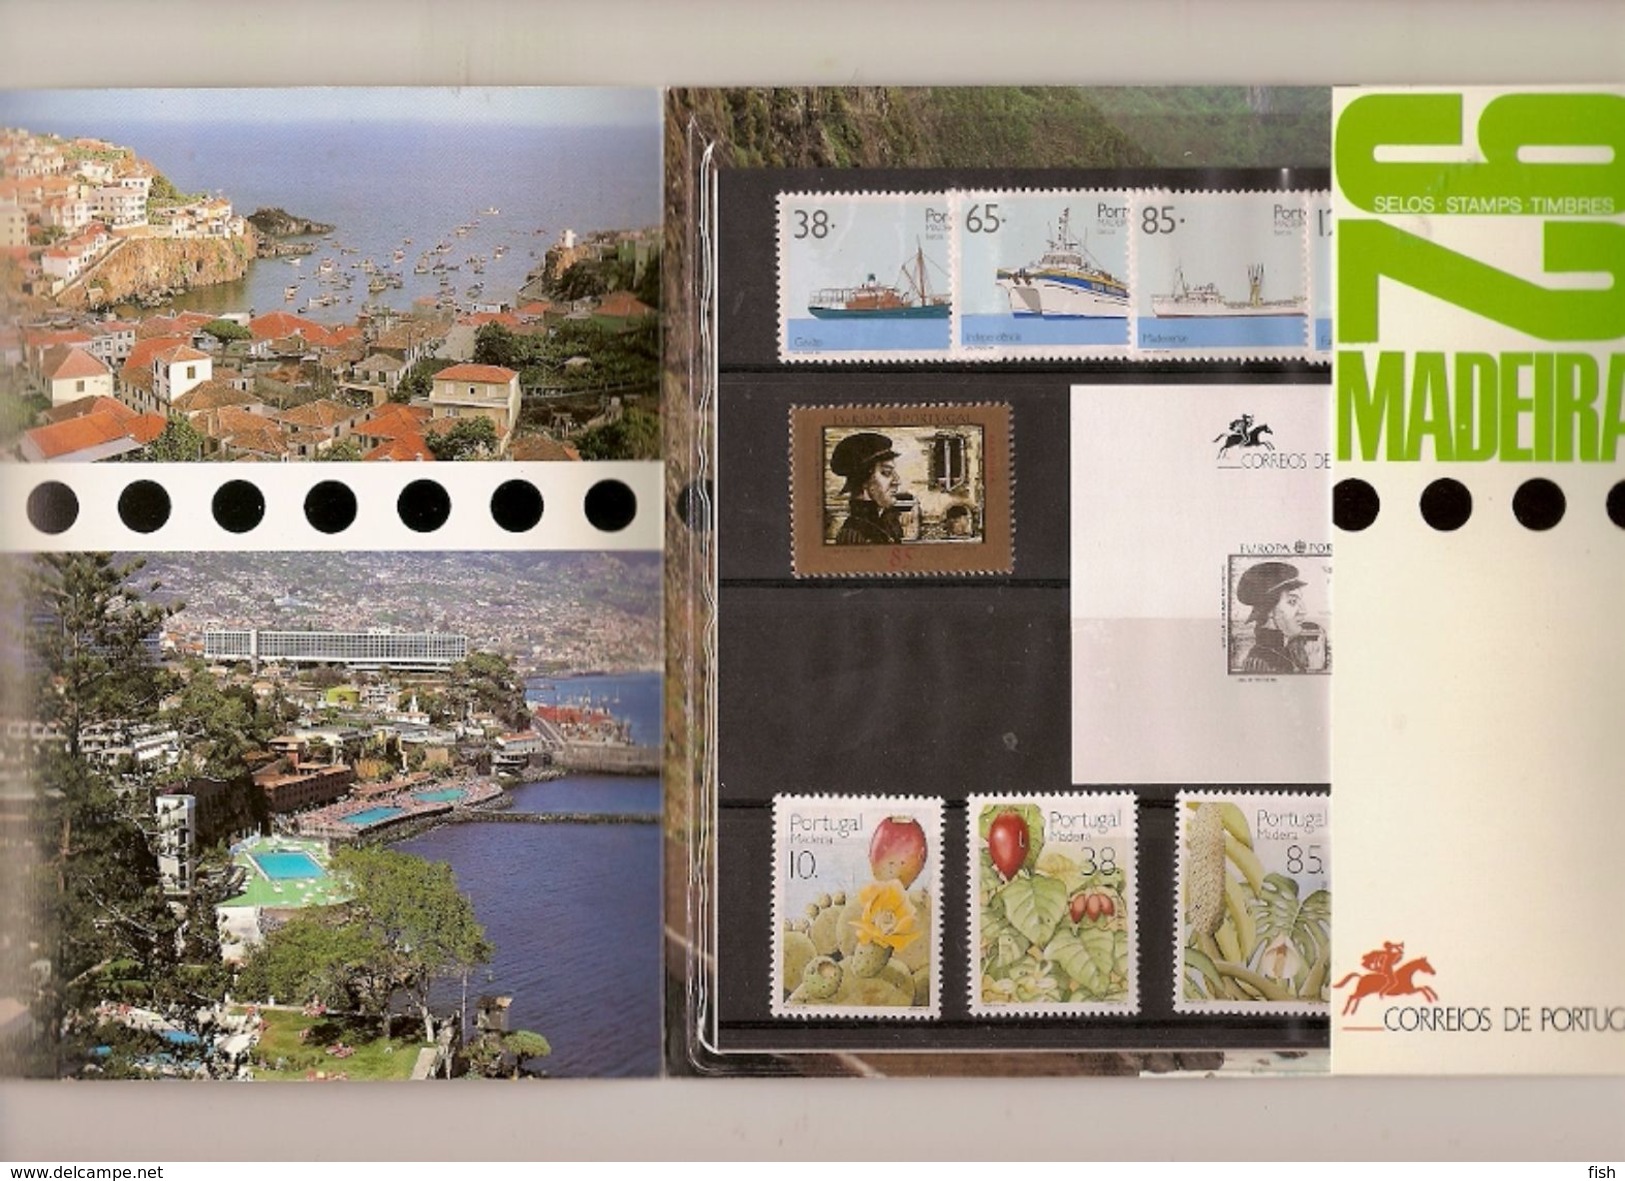 Portugal ** & Carteira Anual Madeira, Tudo Em Selos 1992 (868) - Booklets